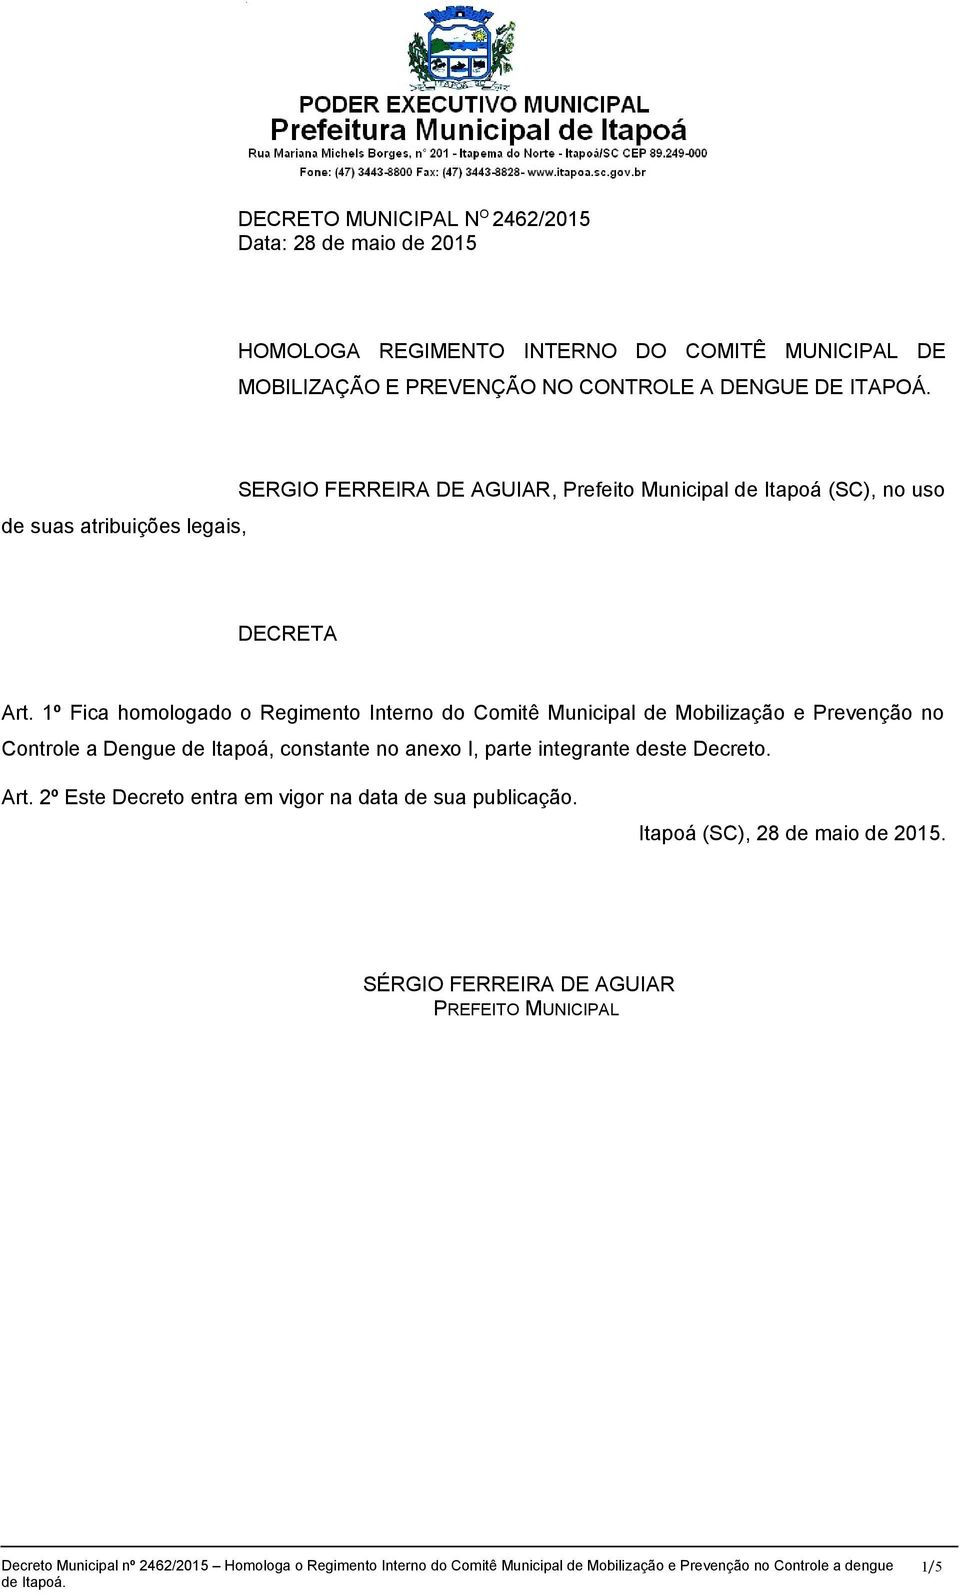 1º Fica homologado o Regimento Interno do Comitê Municipal de Mobilização e Prevenção no Controle a Dengue de Itapoá, constante no anexo I, parte